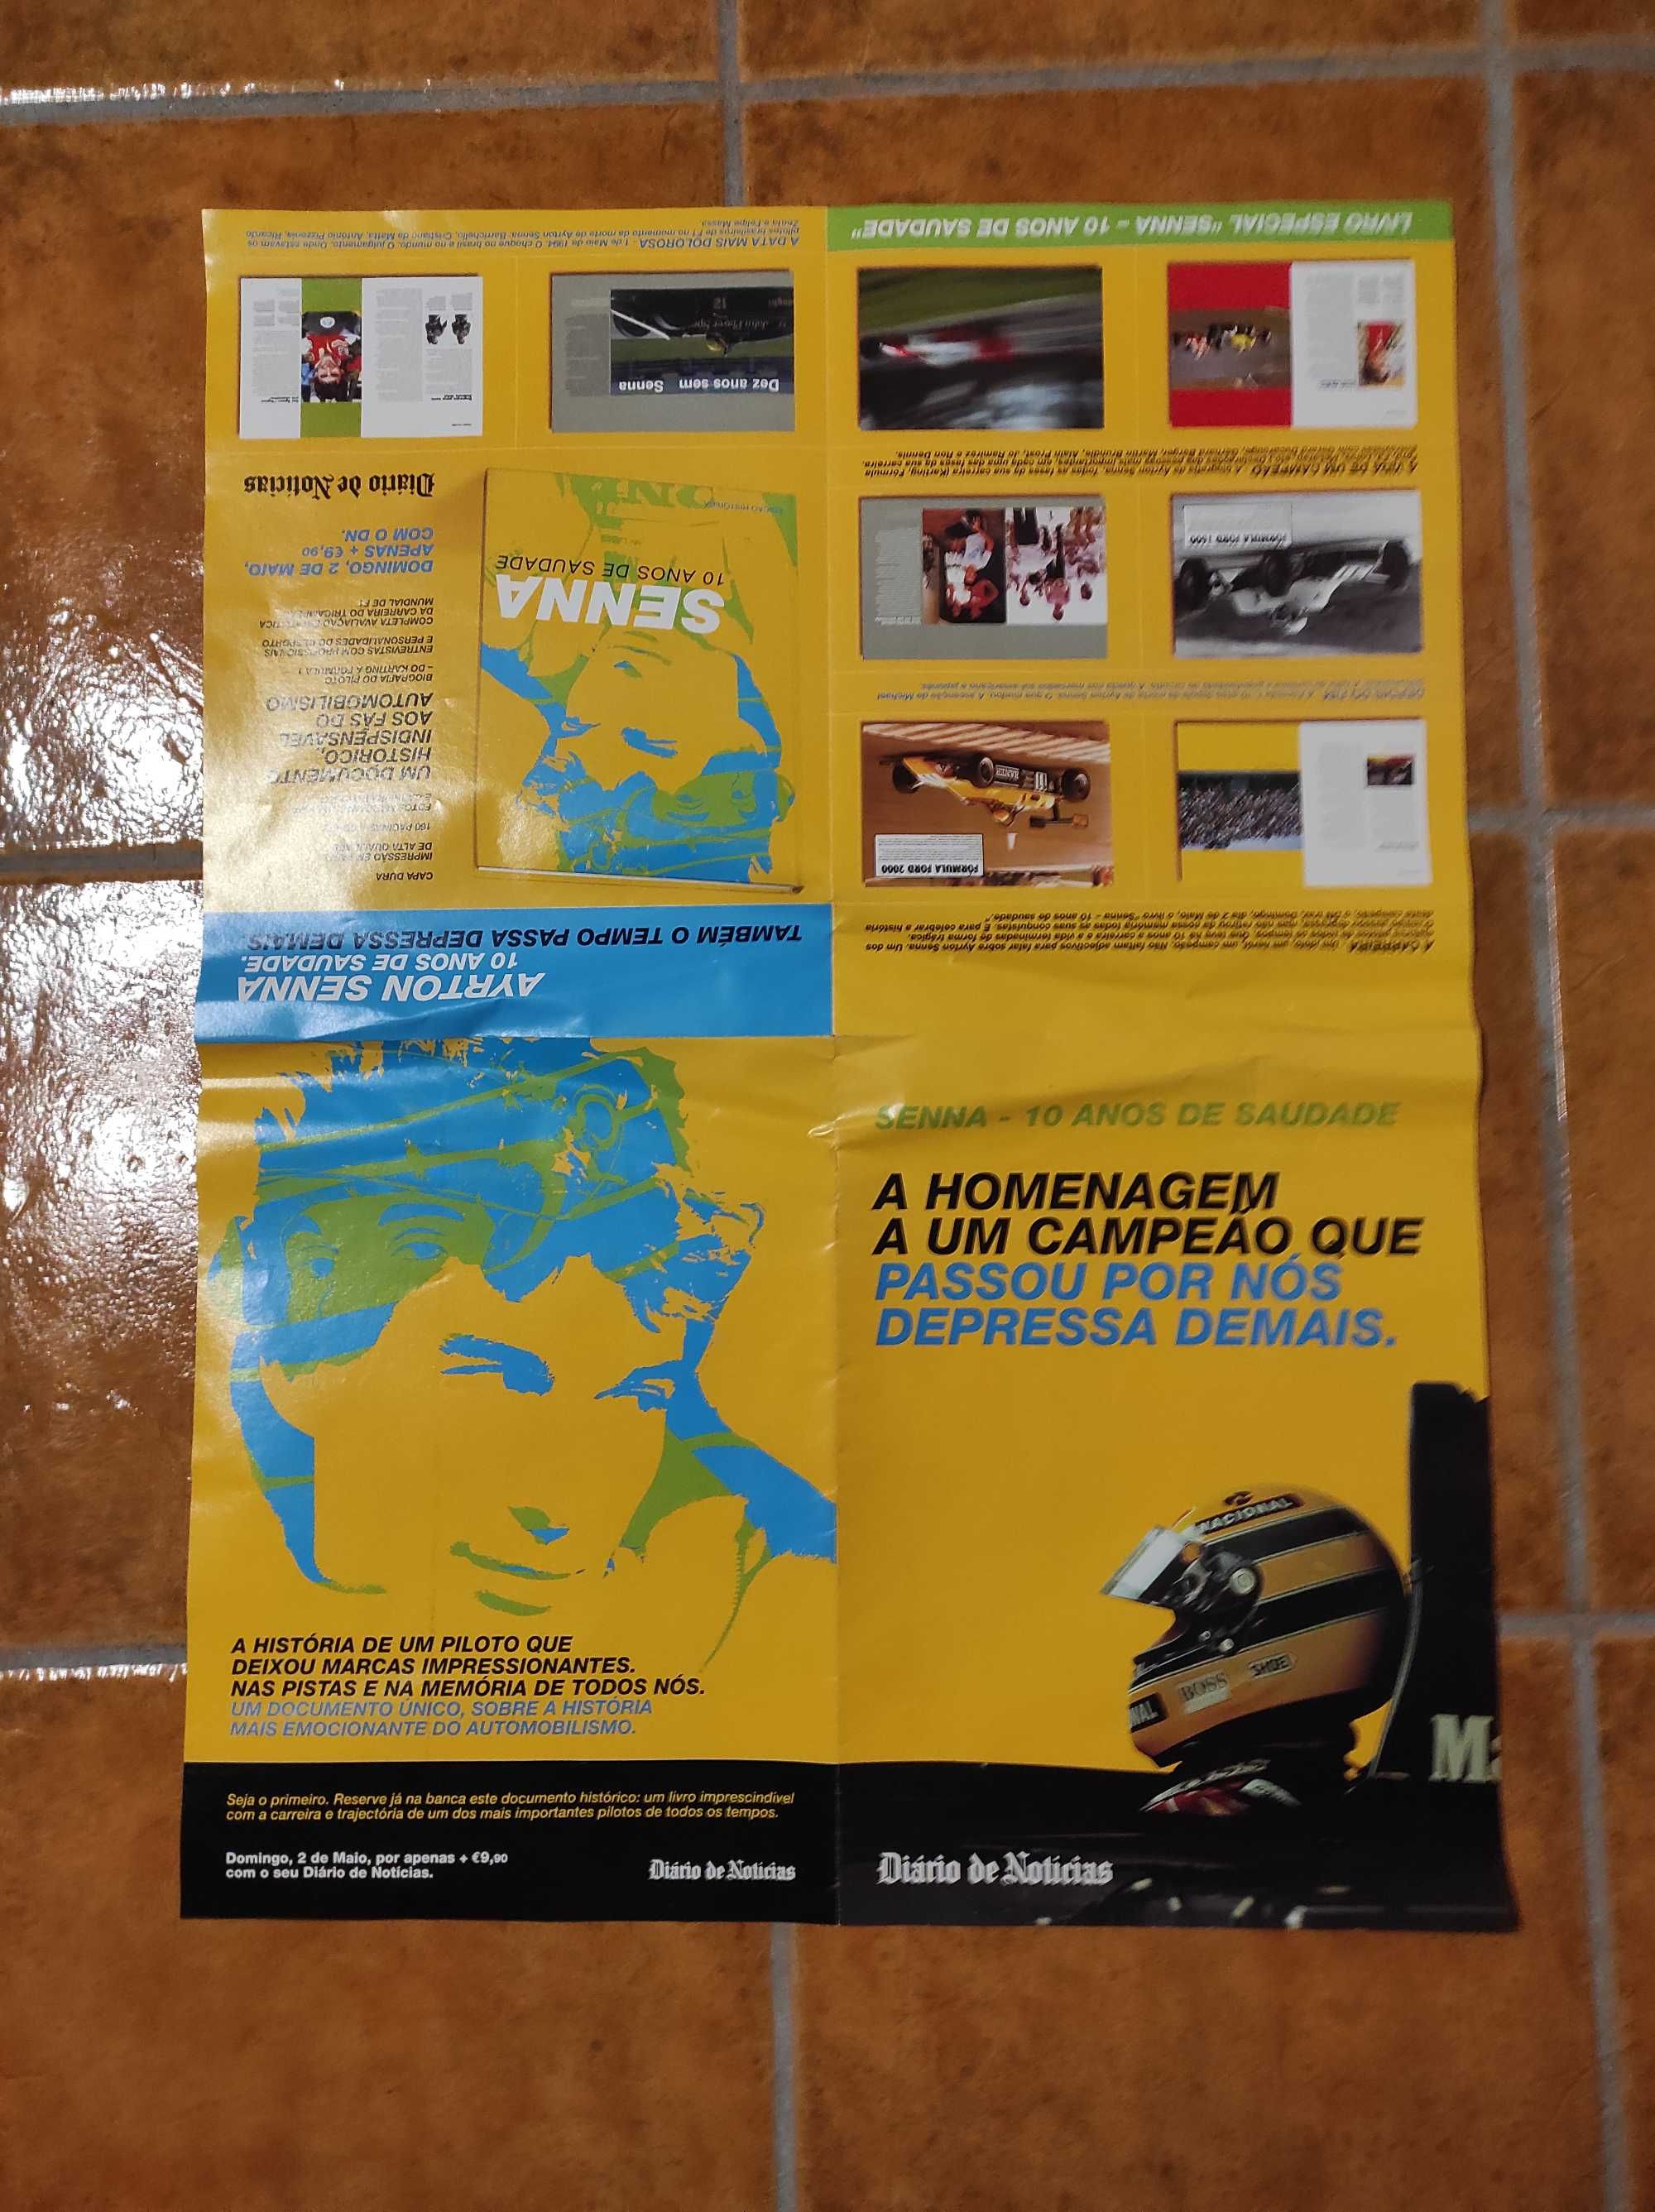 Airton Senna poster